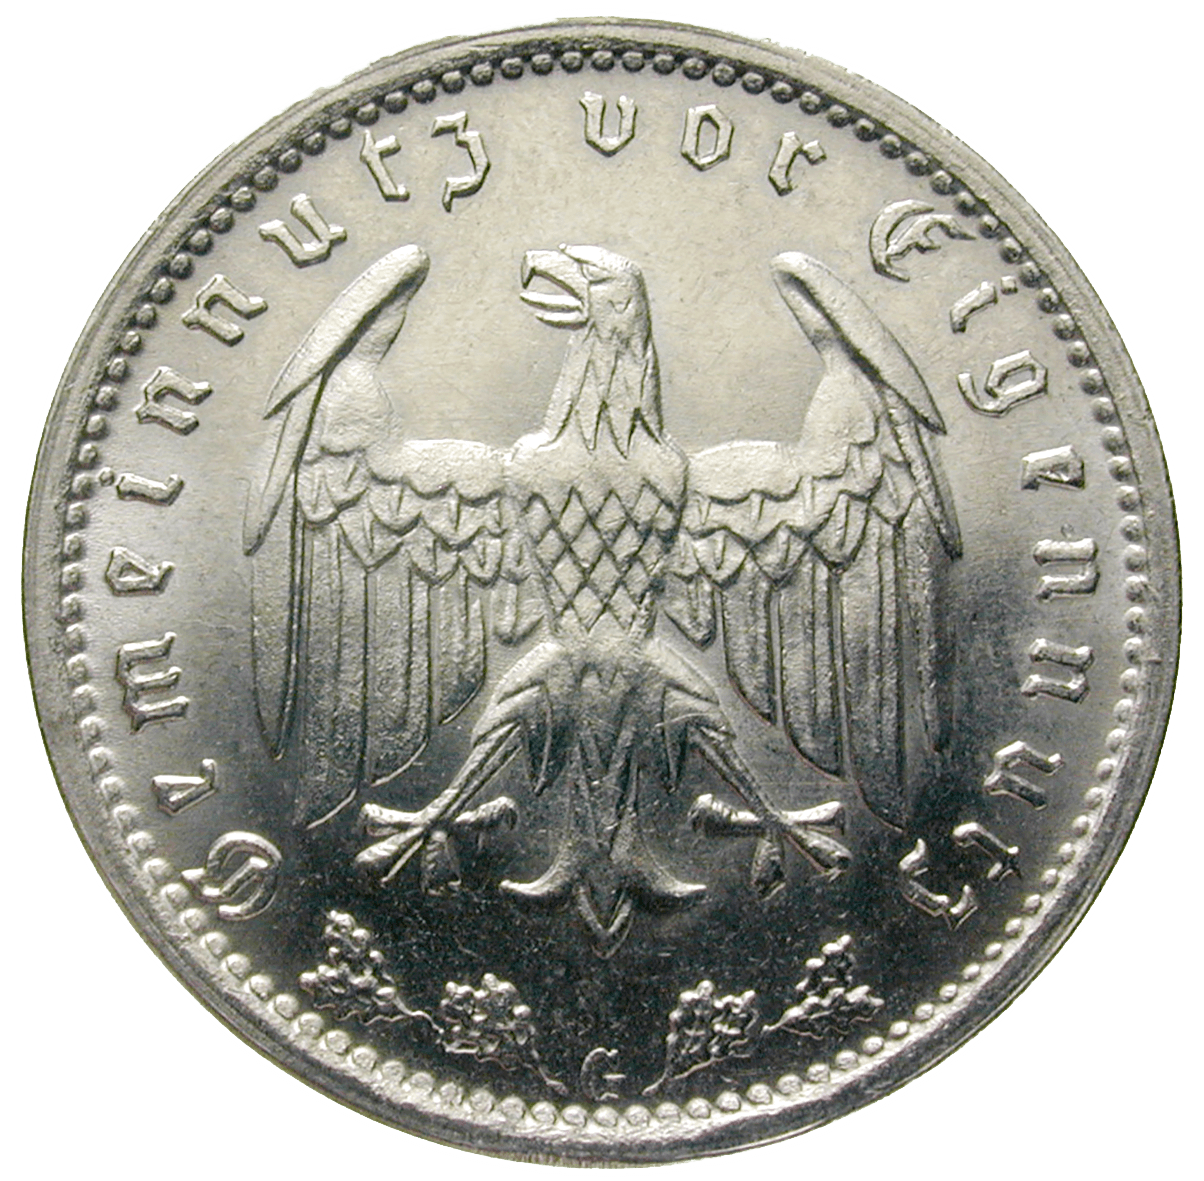 Deutsches Drittes Reich, 1 Reichsmark 1939 (reverse)